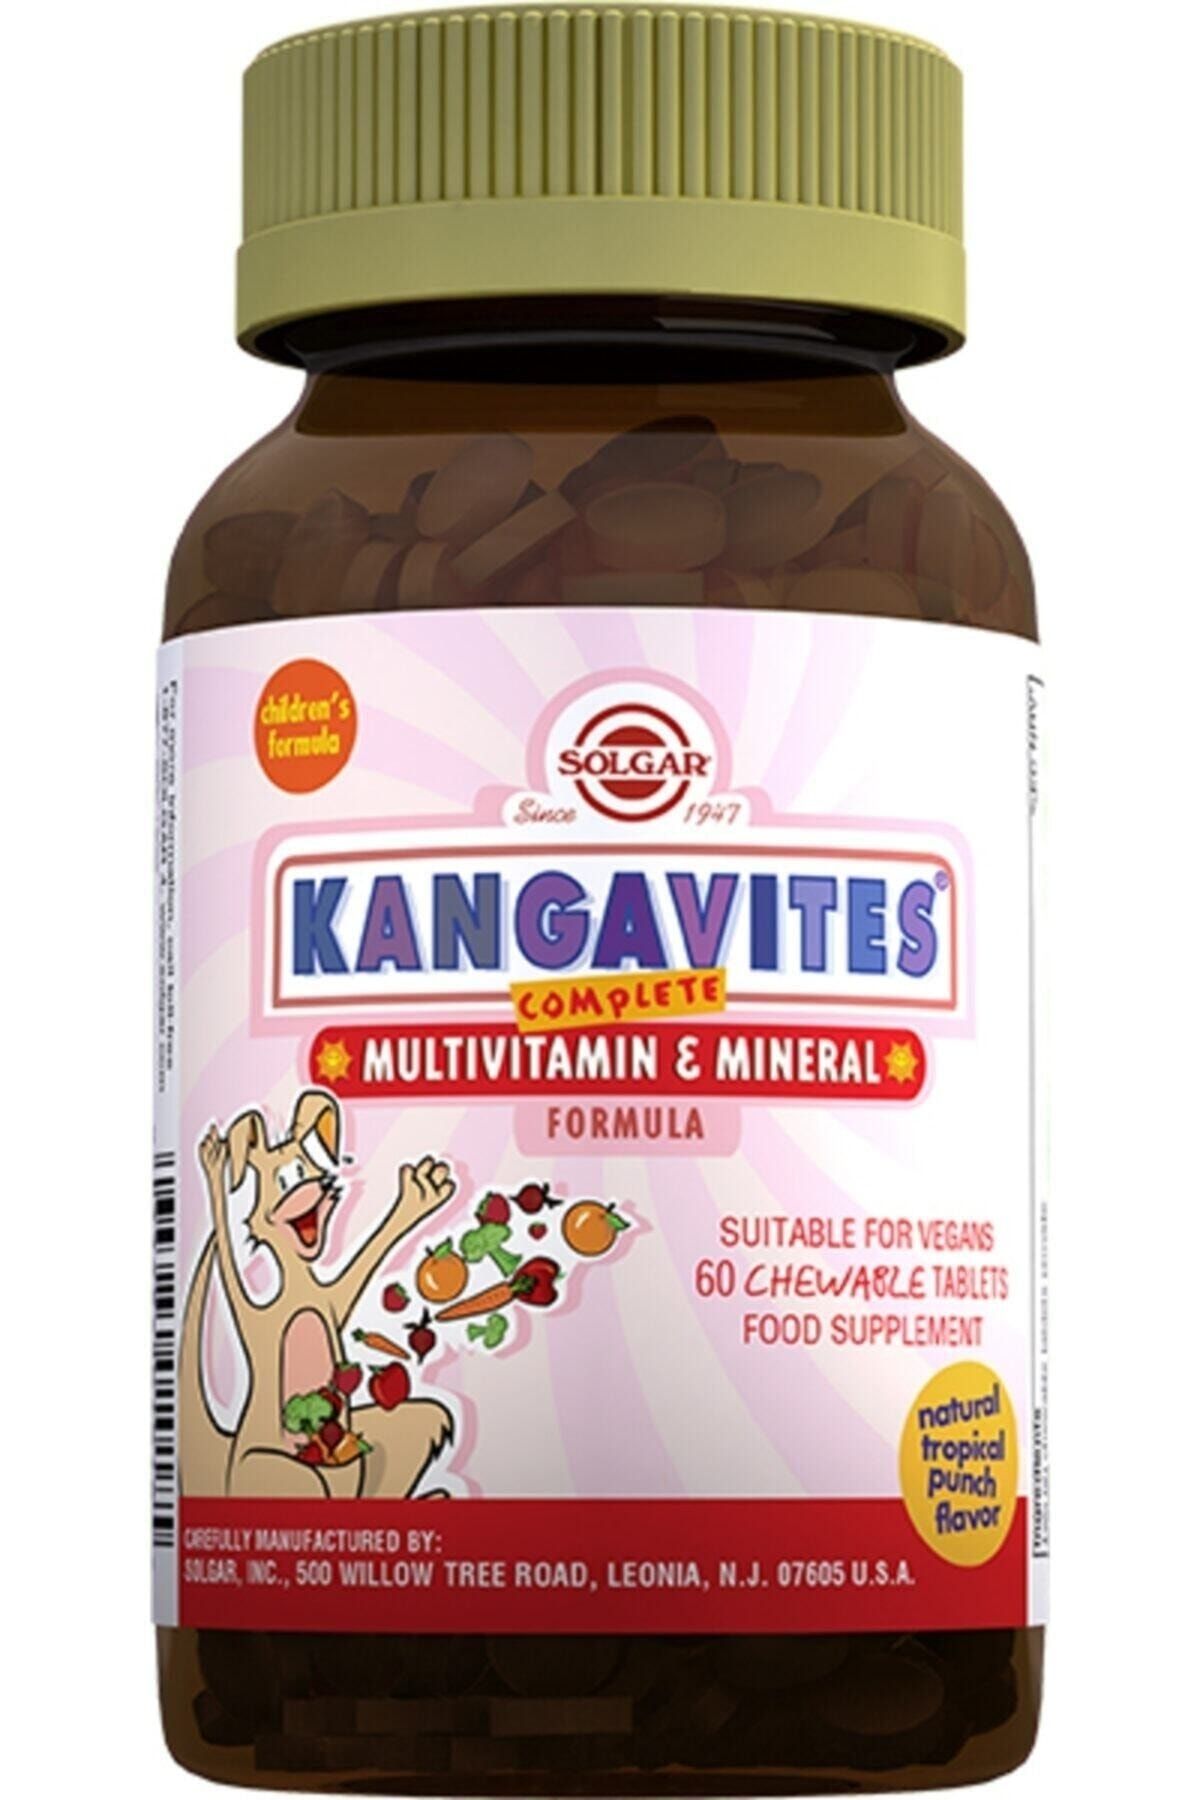 Solgar Kangavites Multivitamin & Mineral 60 Tablet - Alliavital.com0554